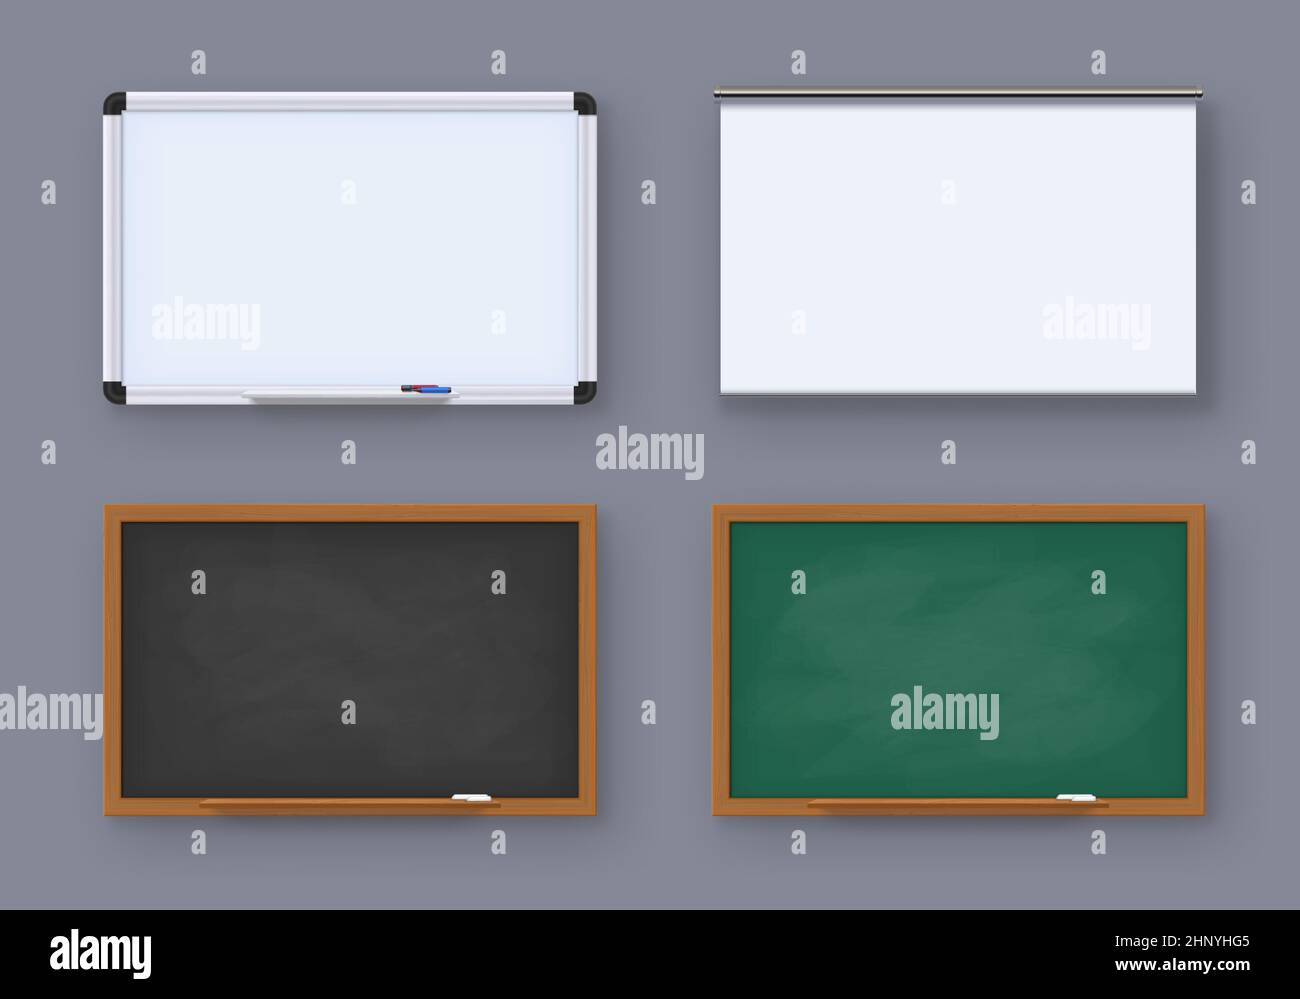 Realistische grüne Tafel, weiße Tafel und Projektionsleinwand. Alte Tafel der Schule. Tafeln für Bildung oder Präsentation Vektor-Set von Blackbo Stock Vektor